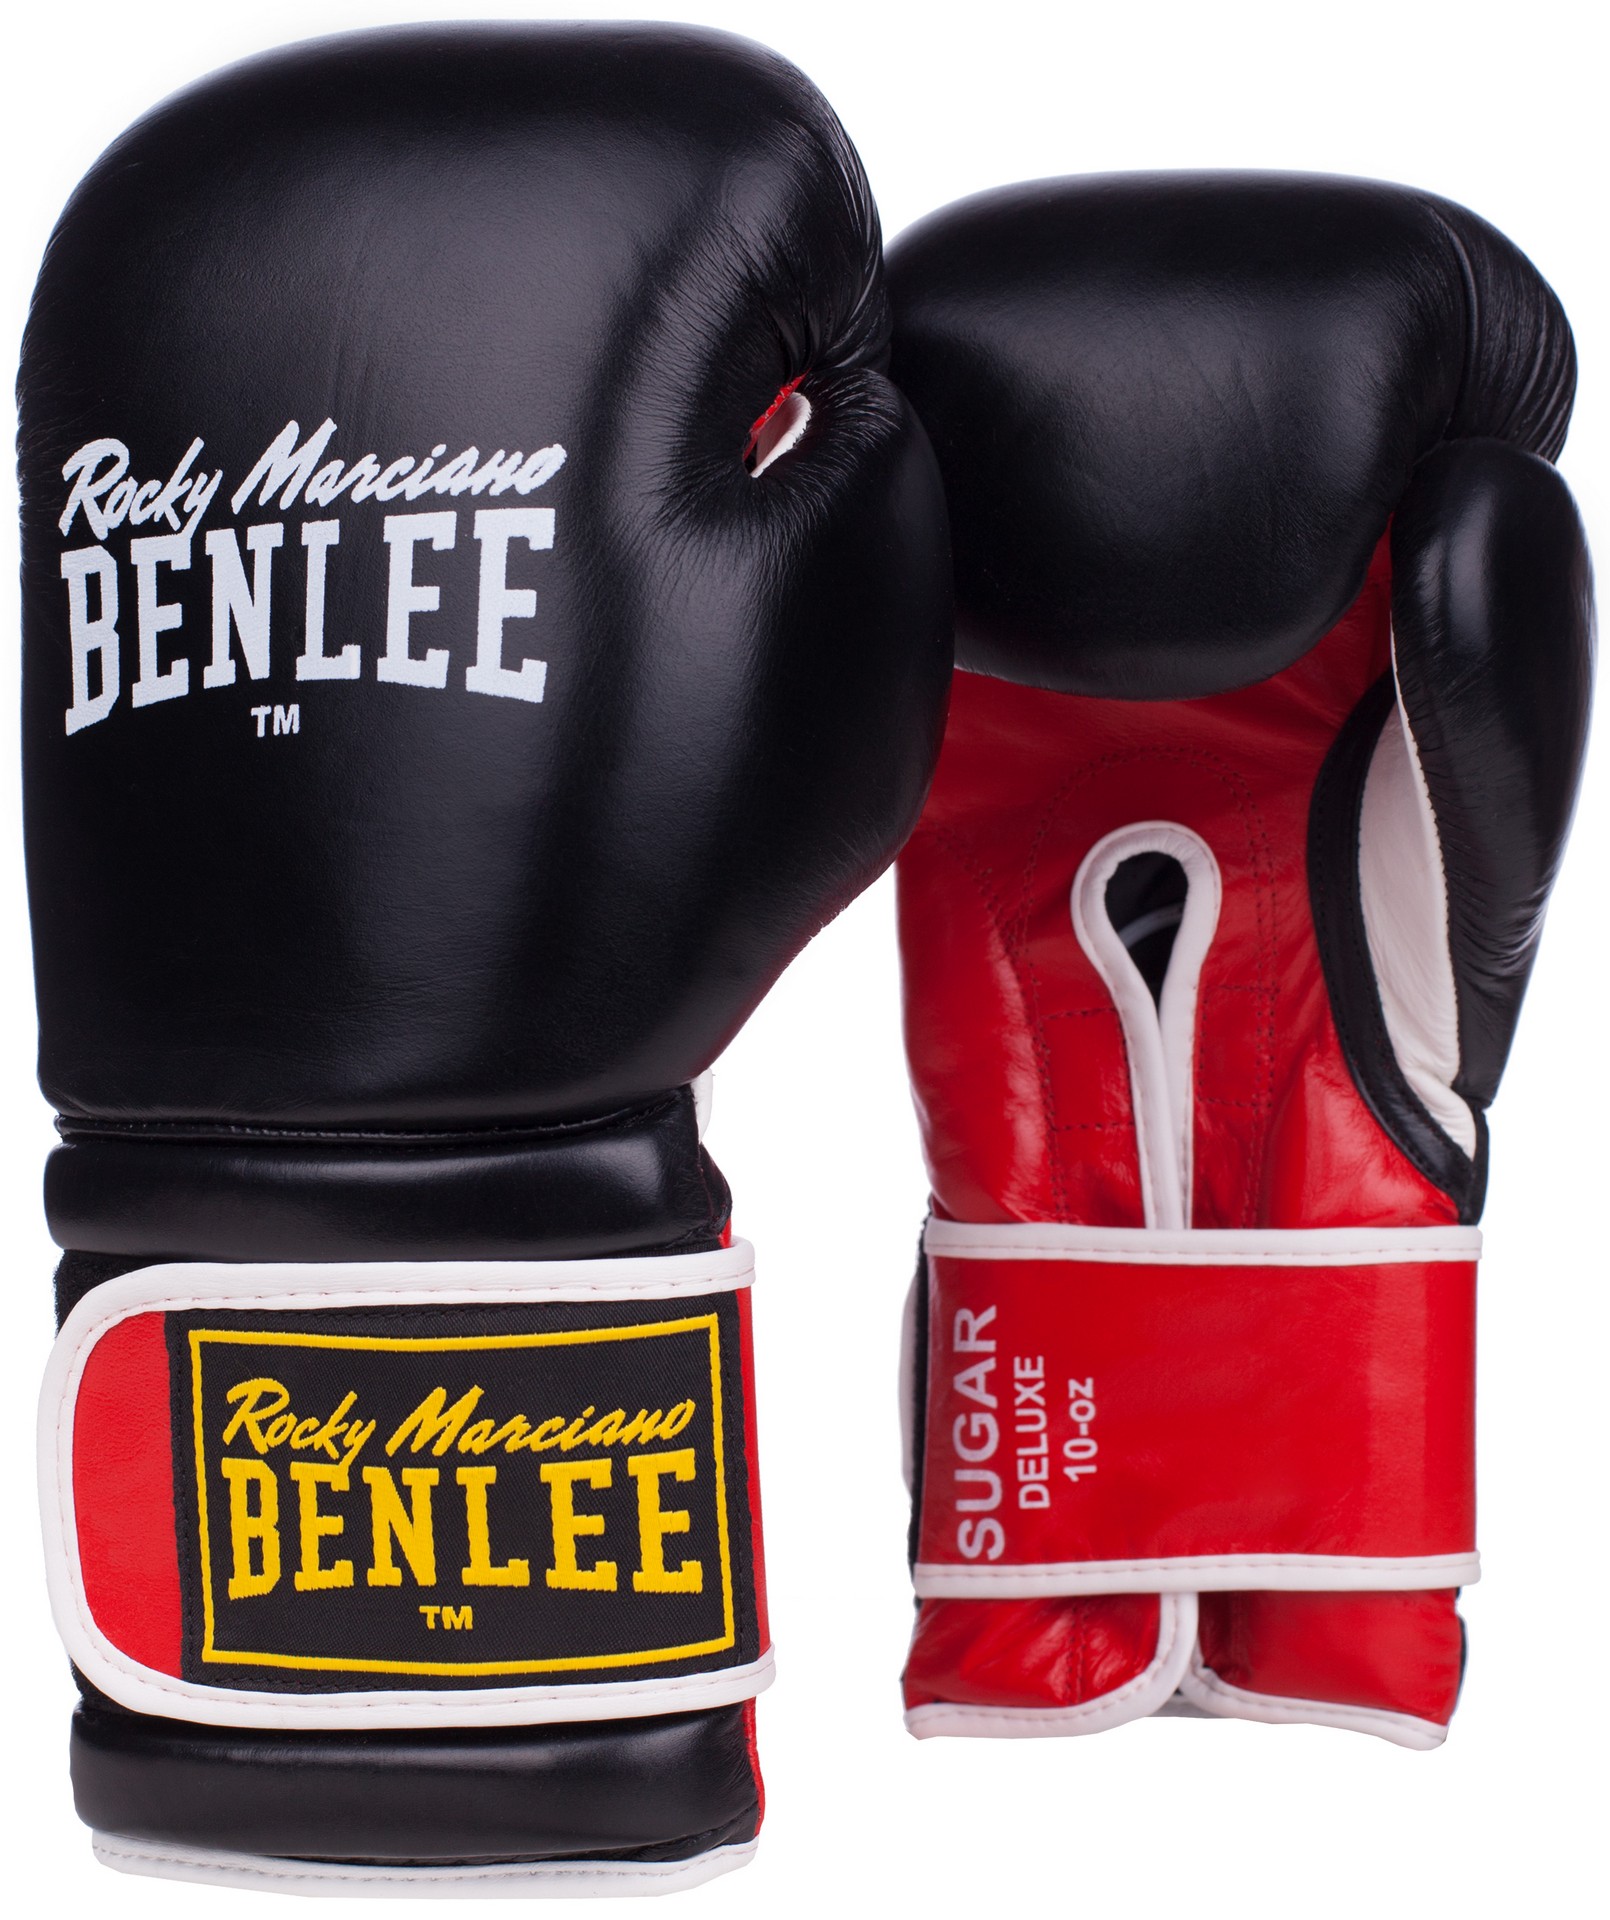 Benlee Black Label Kopfschutz für das Boxen, 52,90 €